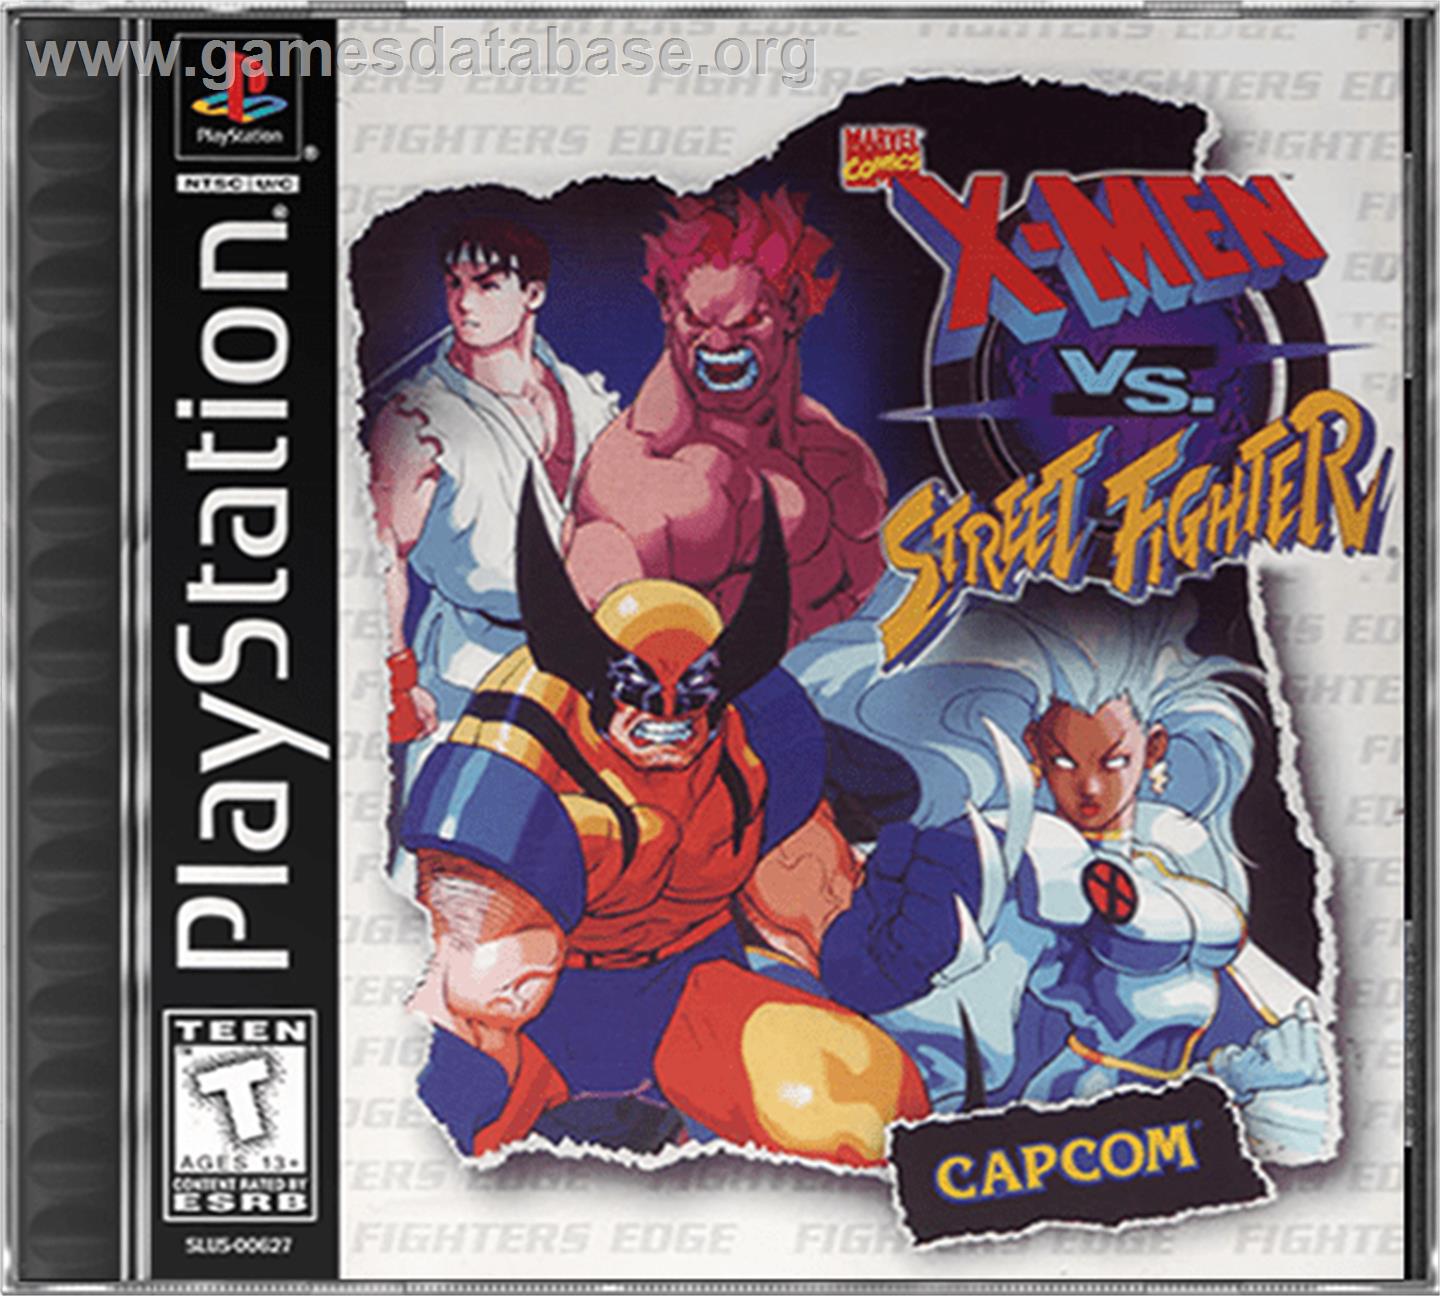 X-Men vs. Street Fighter - Sony Playstation - Artwork - Box